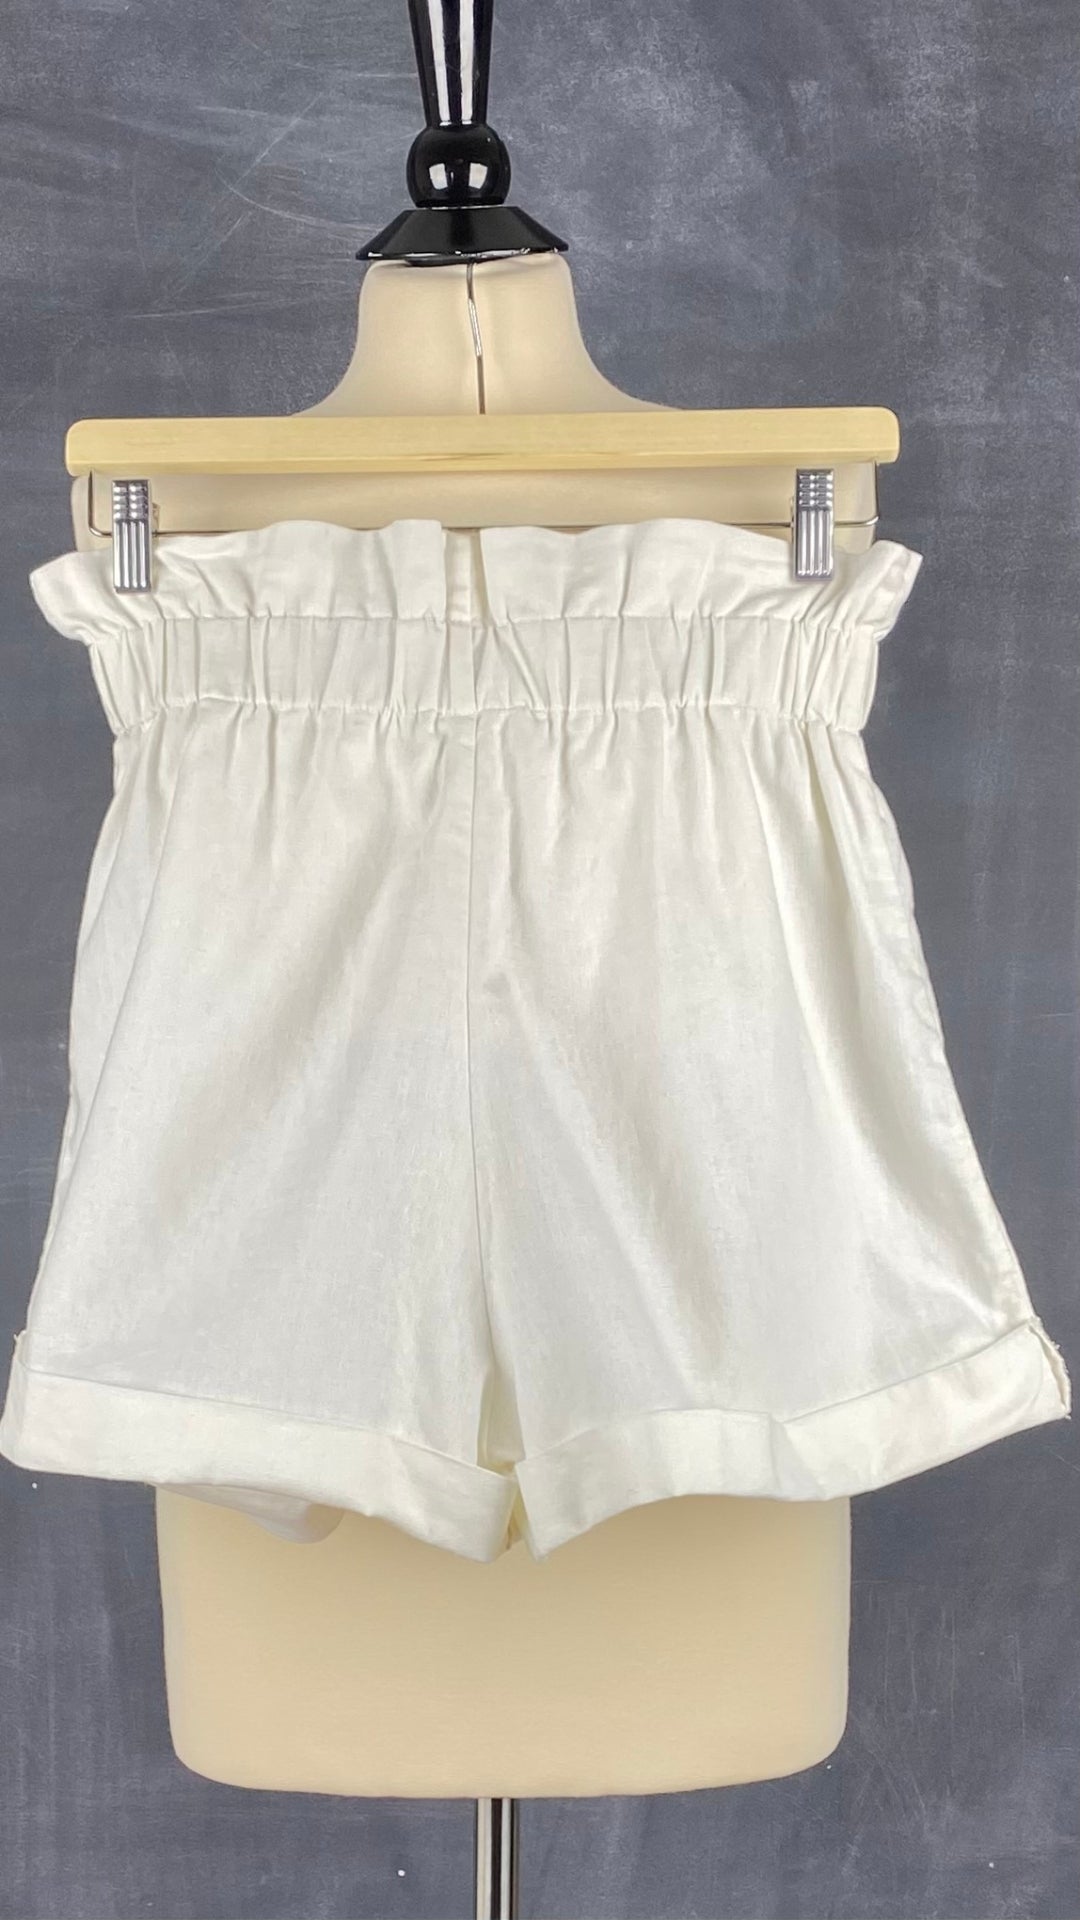 Short ivoire en mélange de lin et coton, marque Mimz, taille medium. Vue de dos.